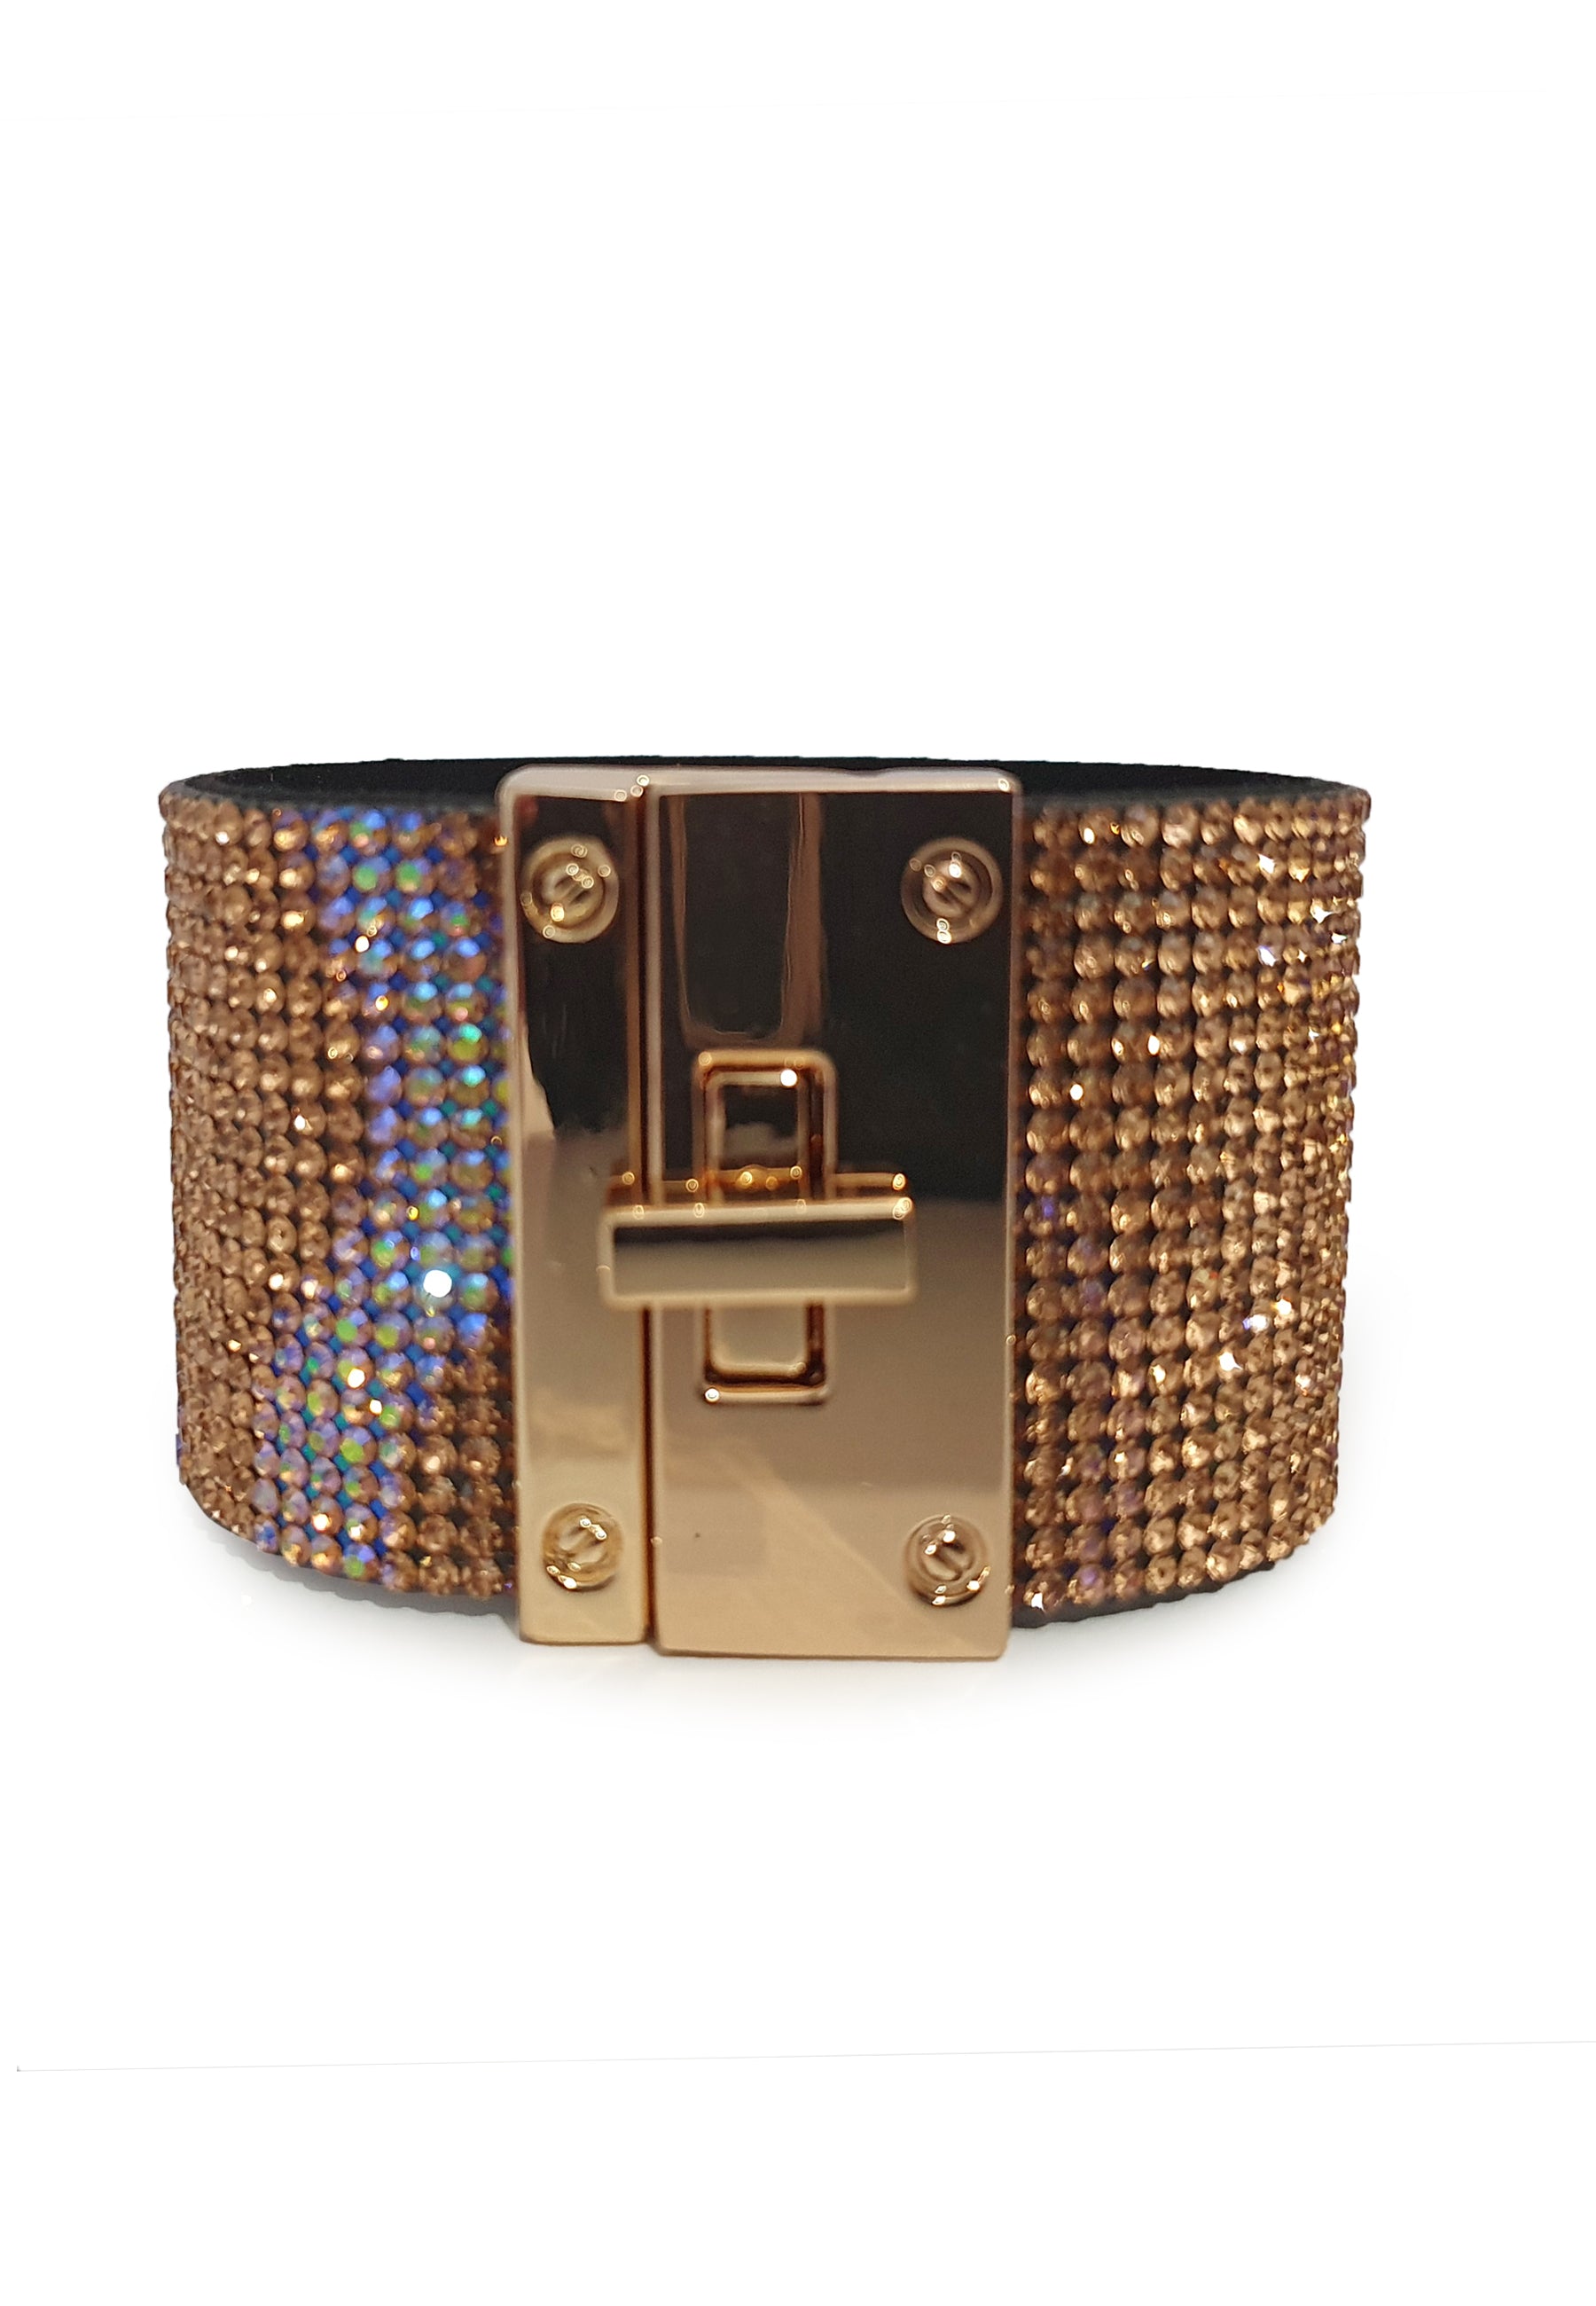 Luxury Hi Fashion Bracelet